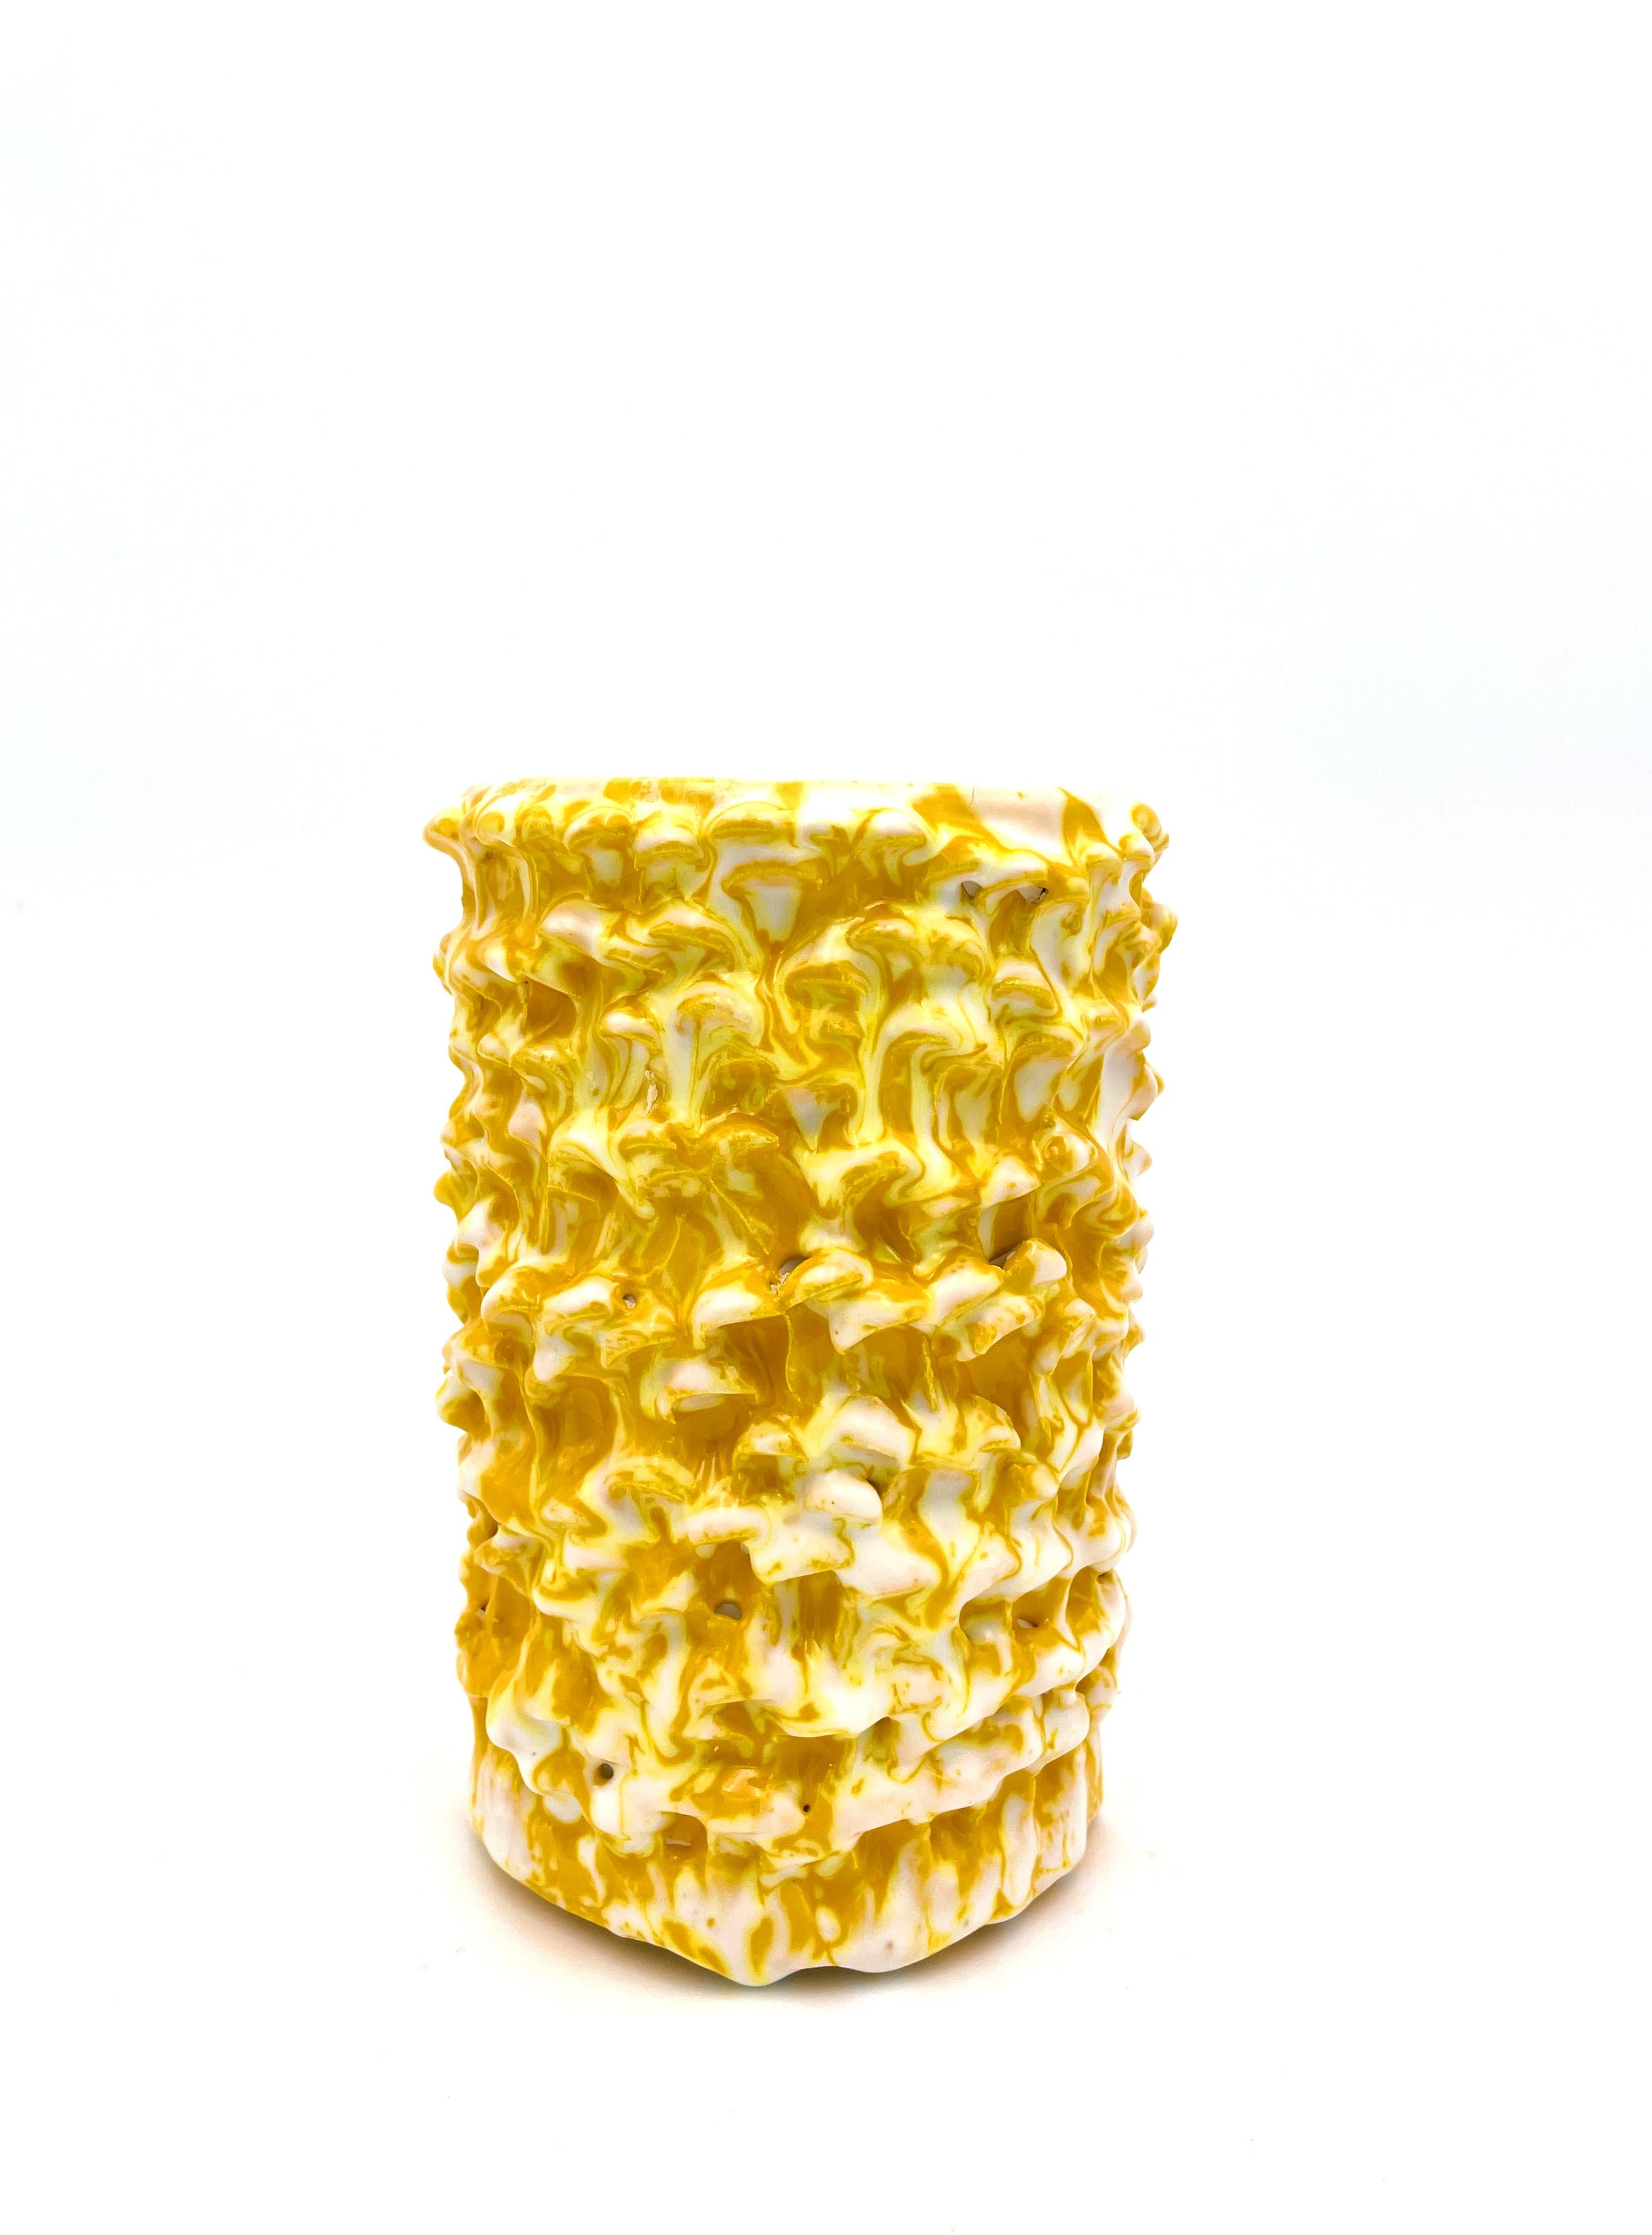 Onda Vase in Sonnenblumengelb und mattem Weiß, klein n. 01 / 20 nummerierte Serie
Einzigartiges handgefertigtes Stück
Glasiertes Steingut von Daria Dazzan
Steingut, Glasuren
17,5 X 13 cm ab.

Handgefertigte Steingutvase von Daria Dazzan,